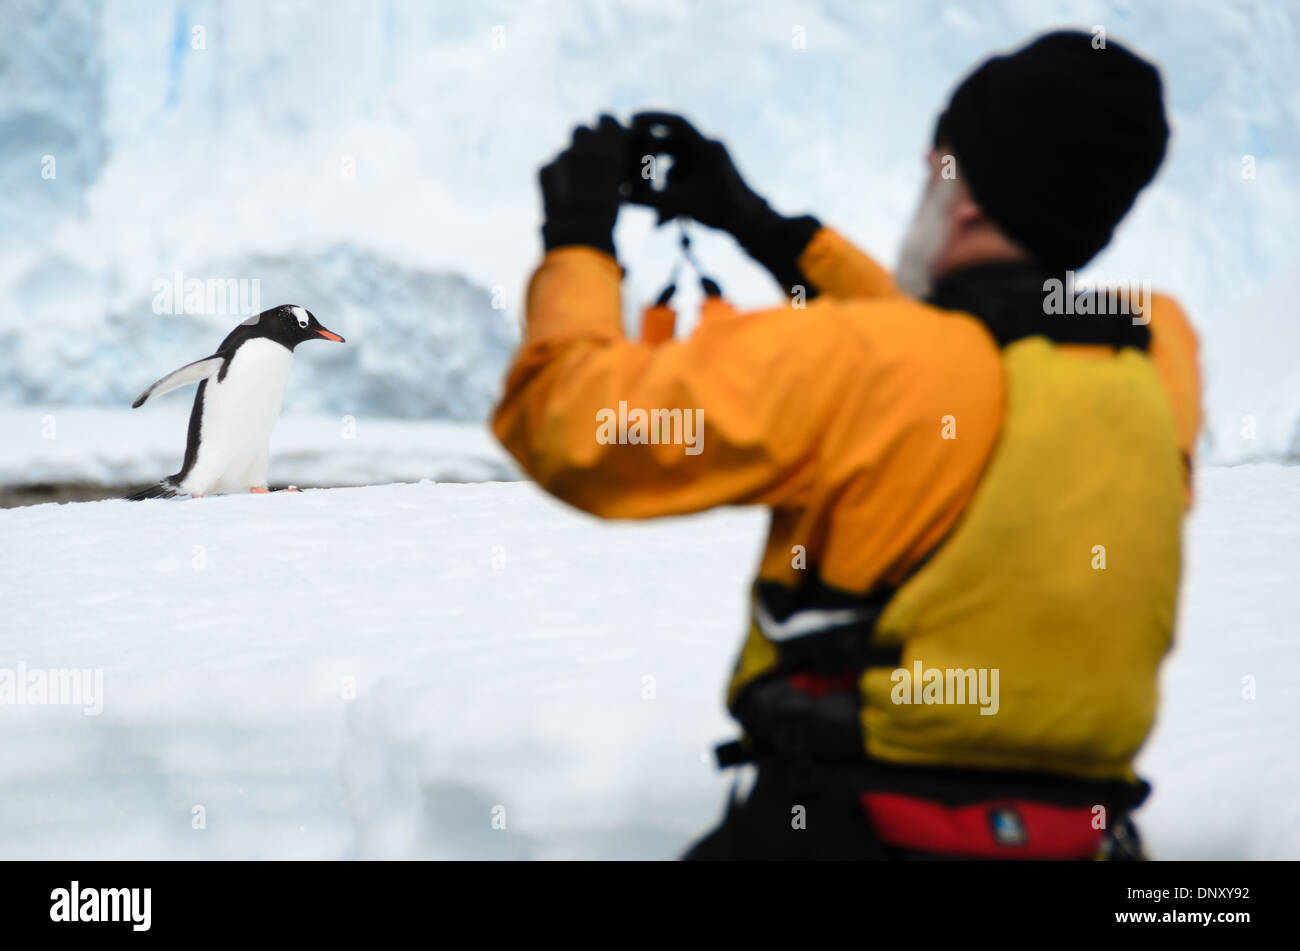 Antartide - un uomo prende la foto di un pinguino Gentoo camminando sulla riva de Cuverville Island sul lato occidentale della penisola antartica. I pinguini Gentoo sono uno dei più numerosi tipi di pinguino in questa regione. Foto Stock